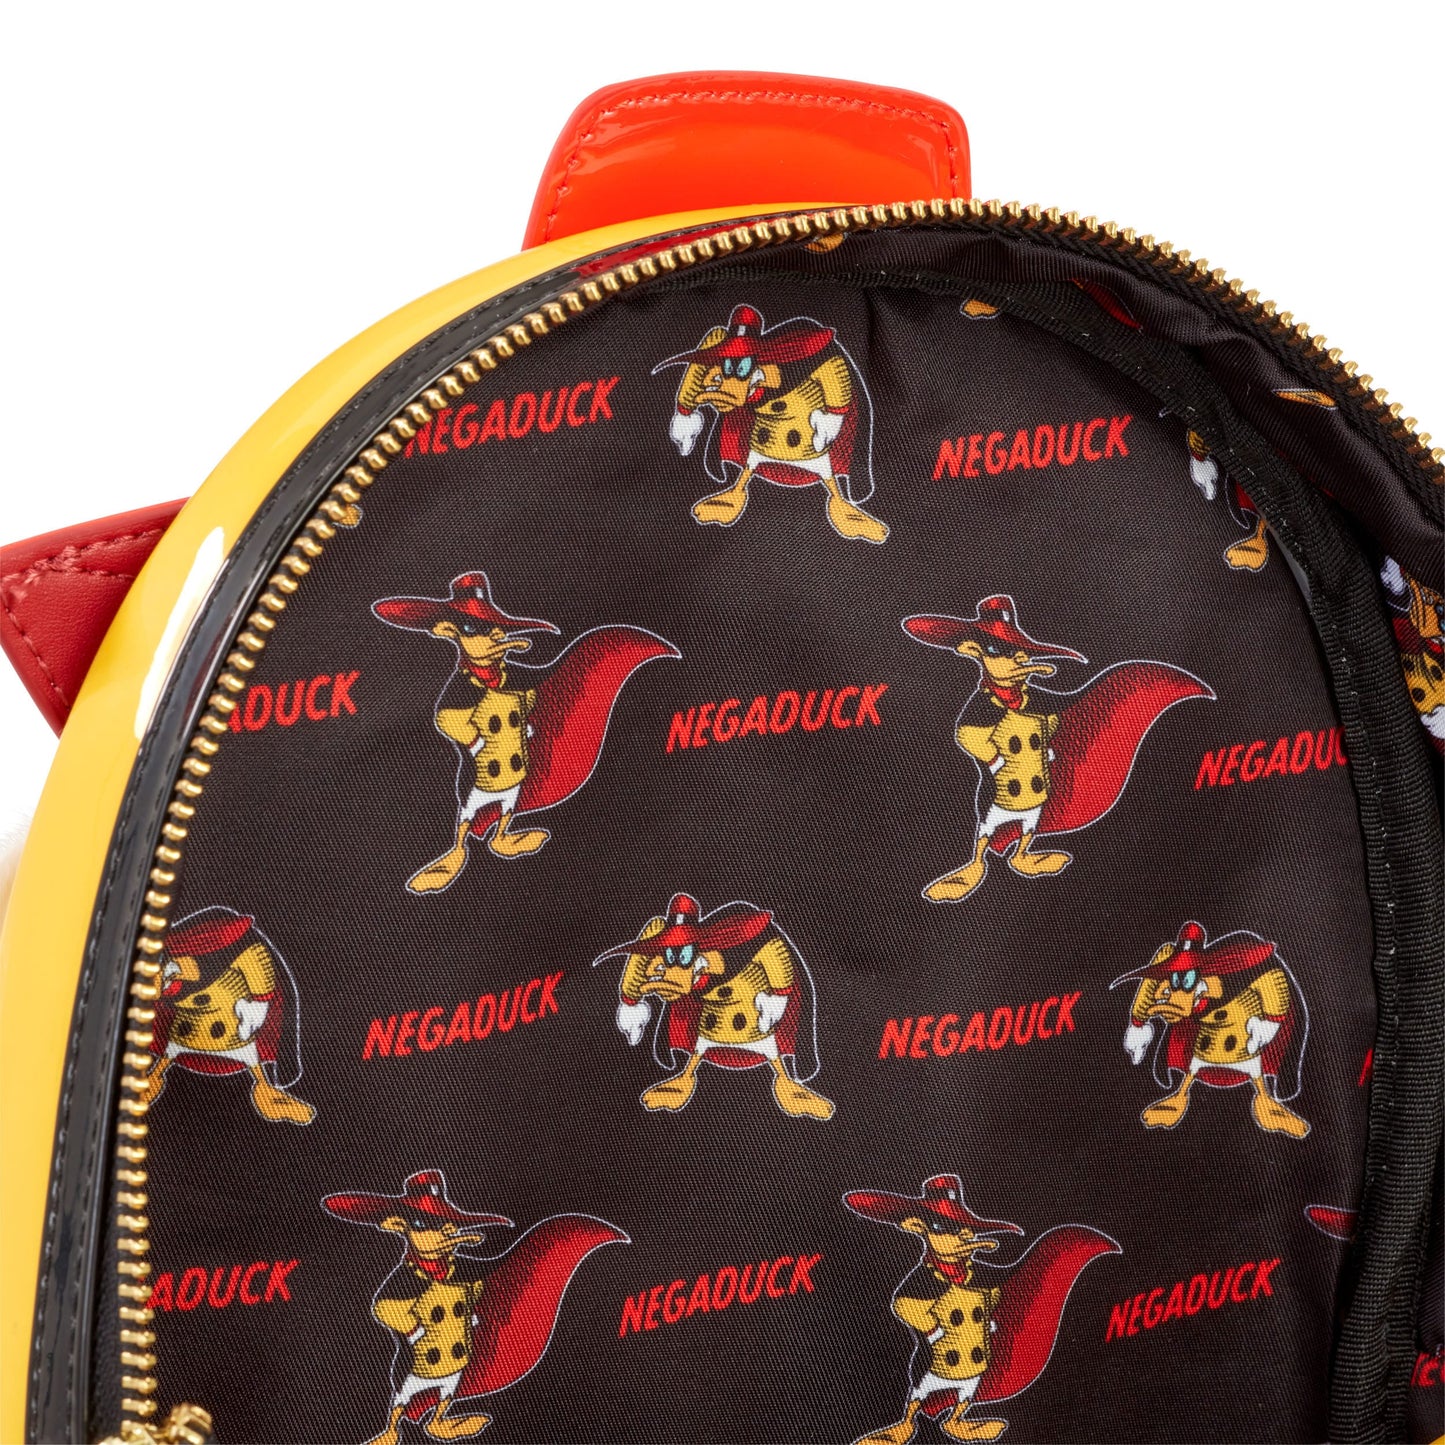 Darkwing Duckwing backpack - Negaducuck